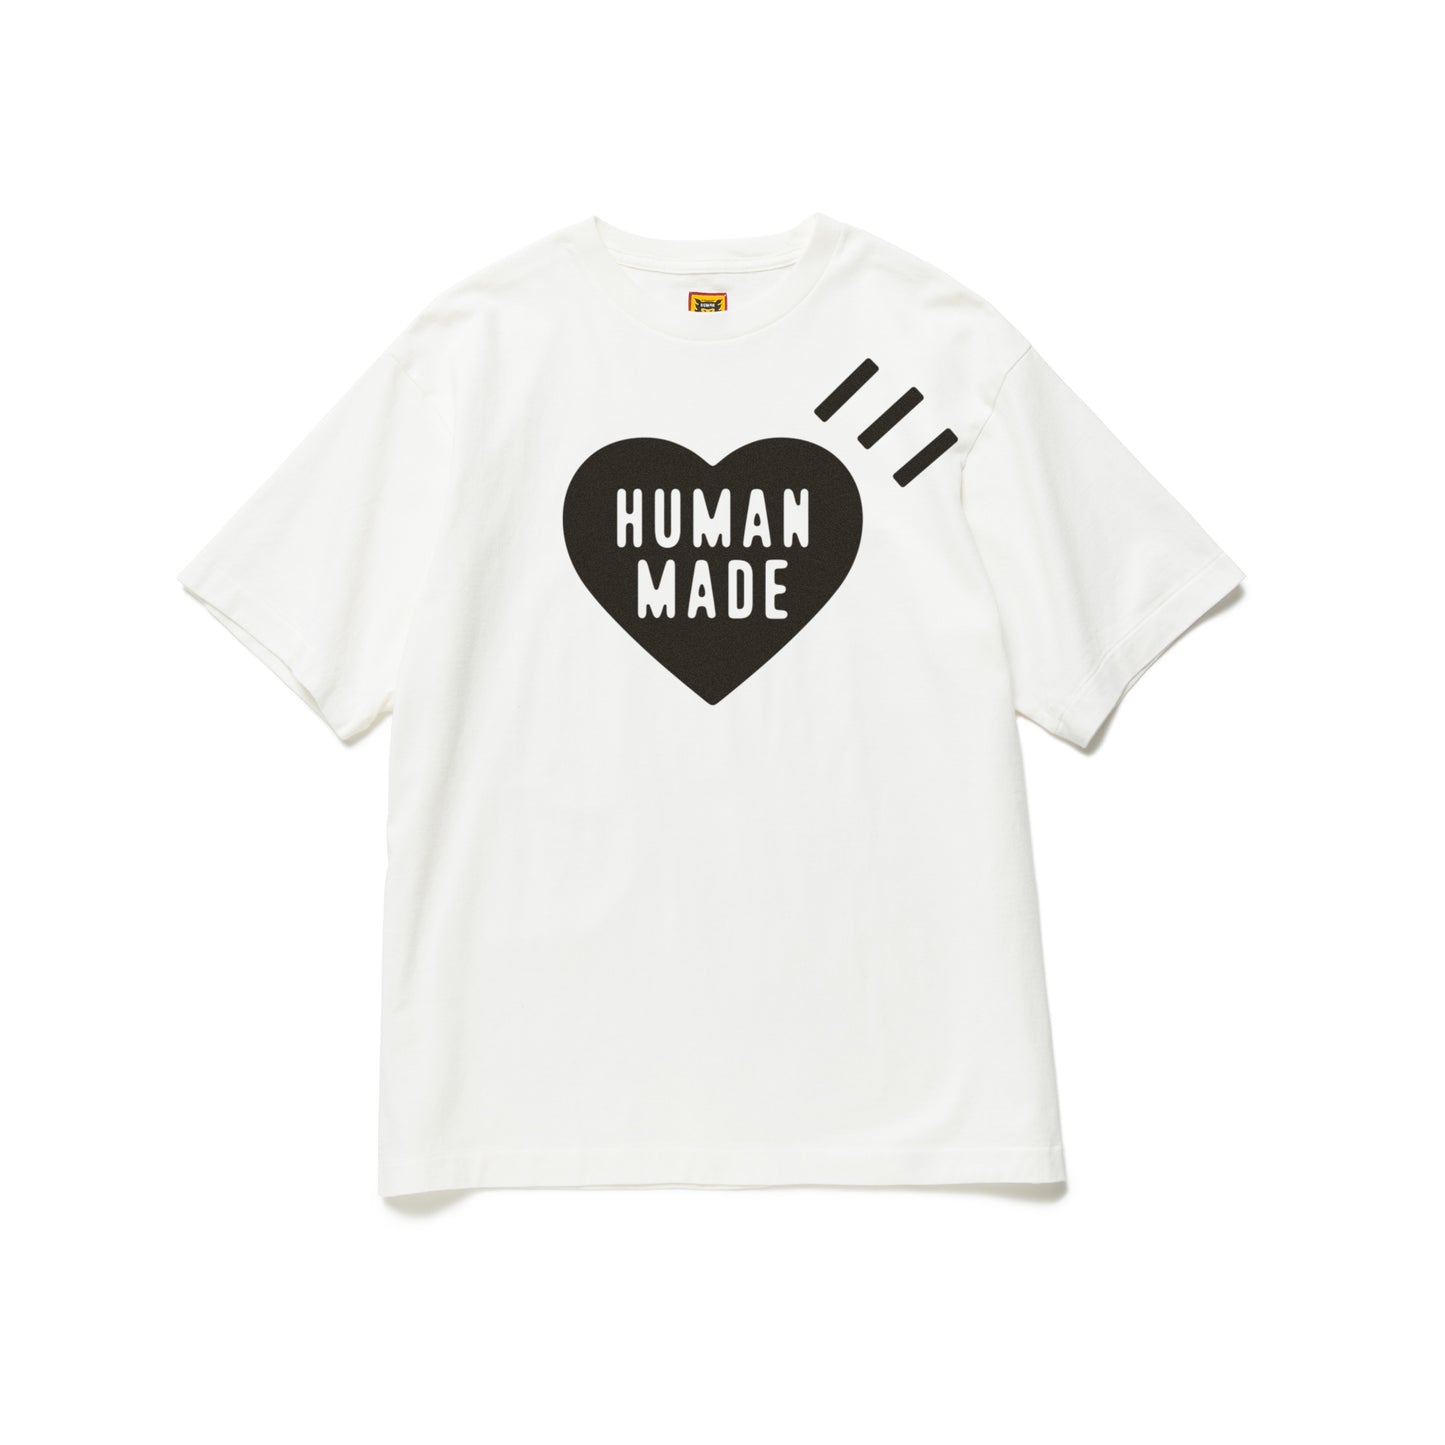 HUMAN MADEハートロゴシャツ-